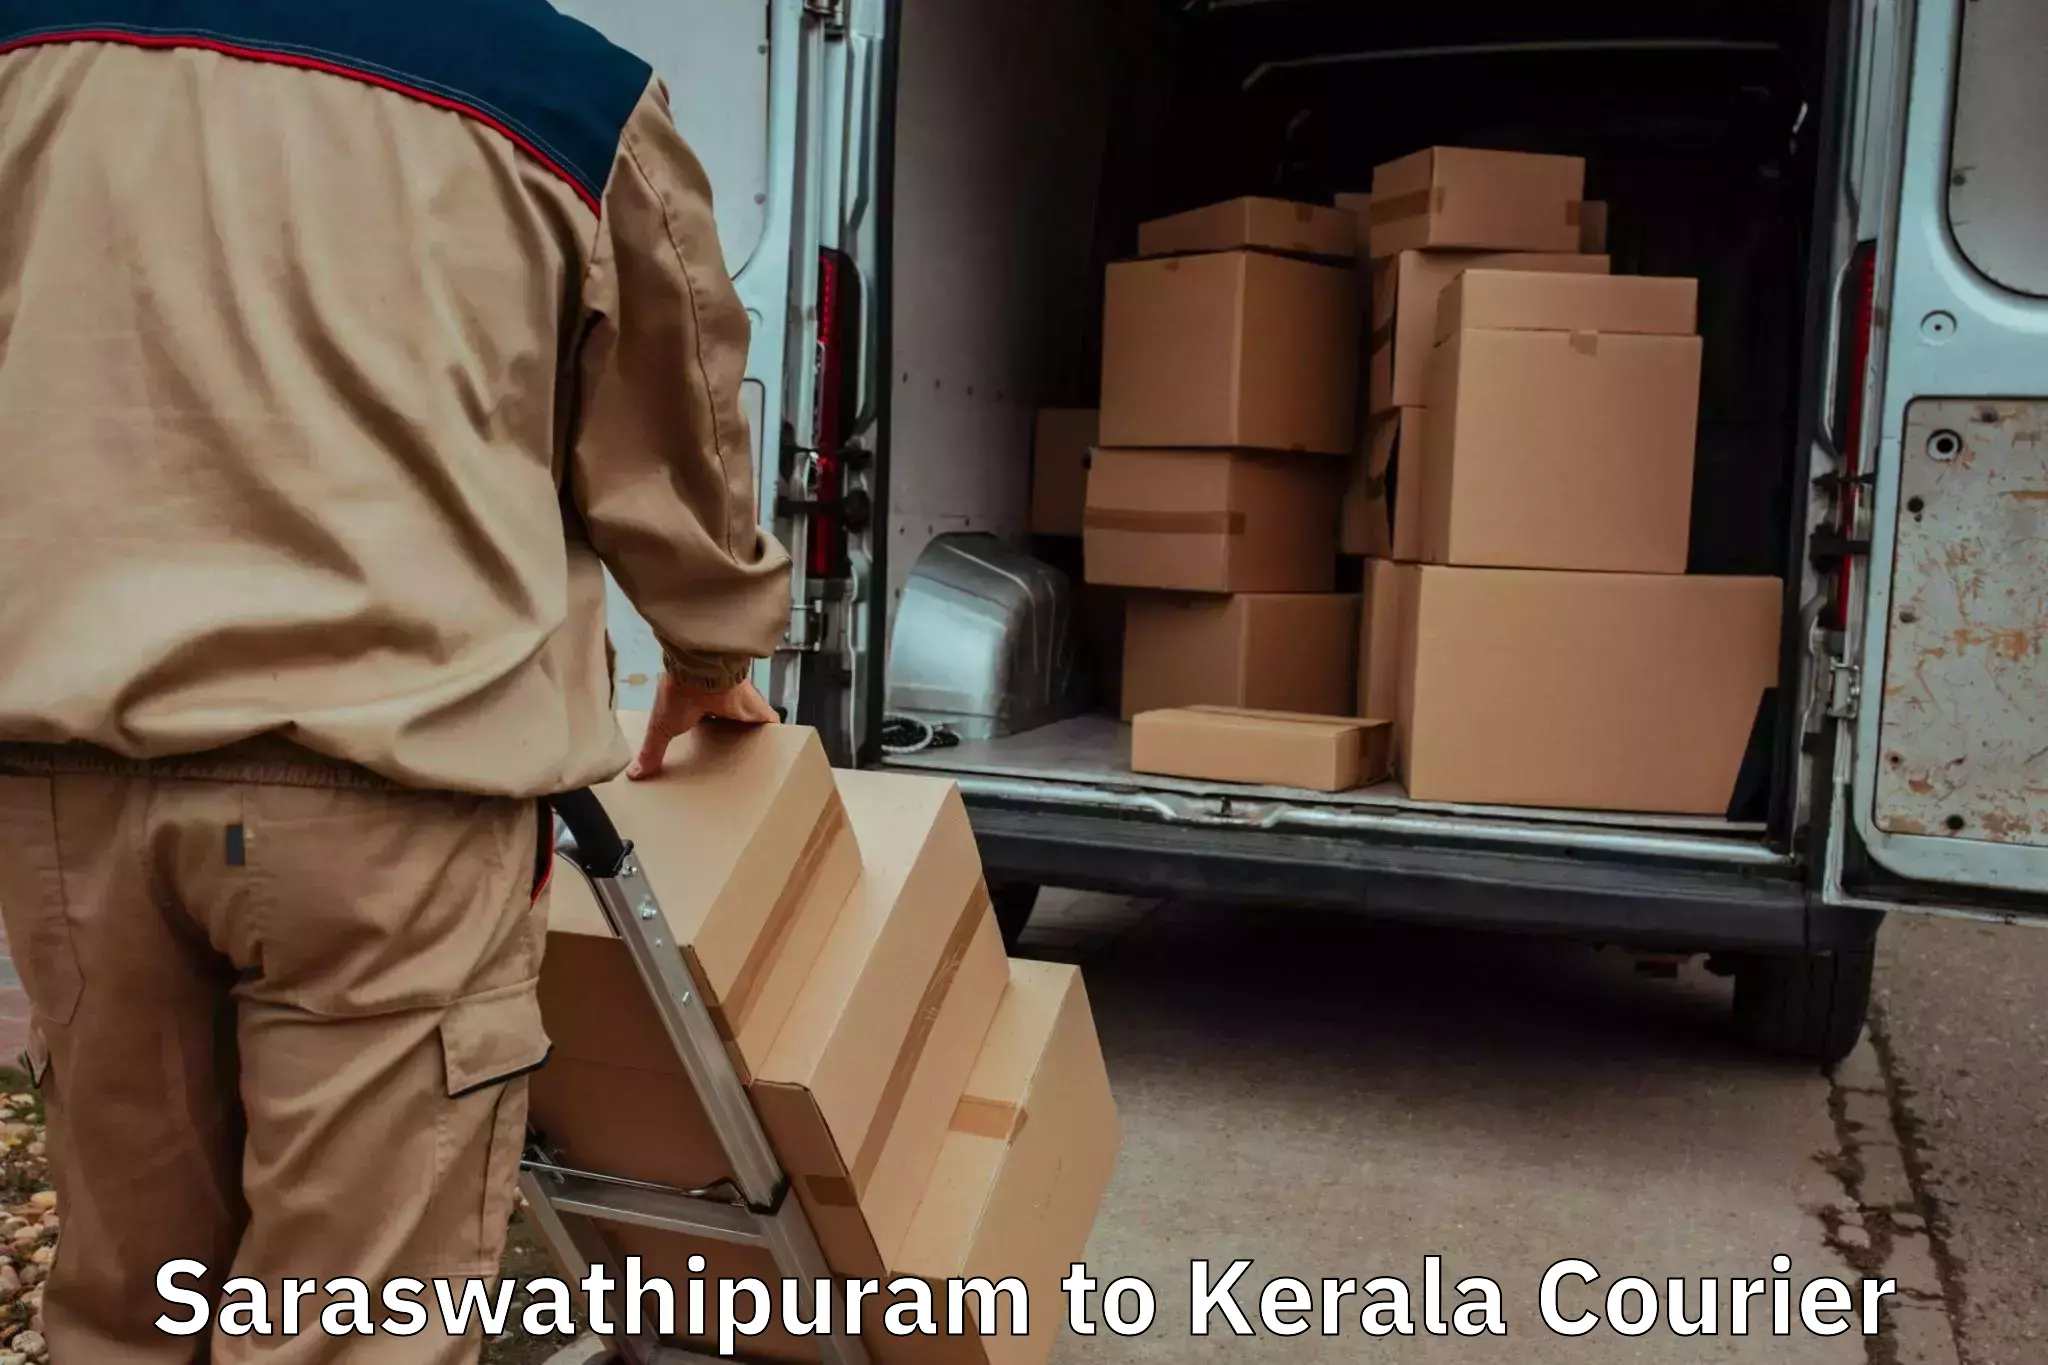 Professional movers Saraswathipuram to Thiruvananthapuram